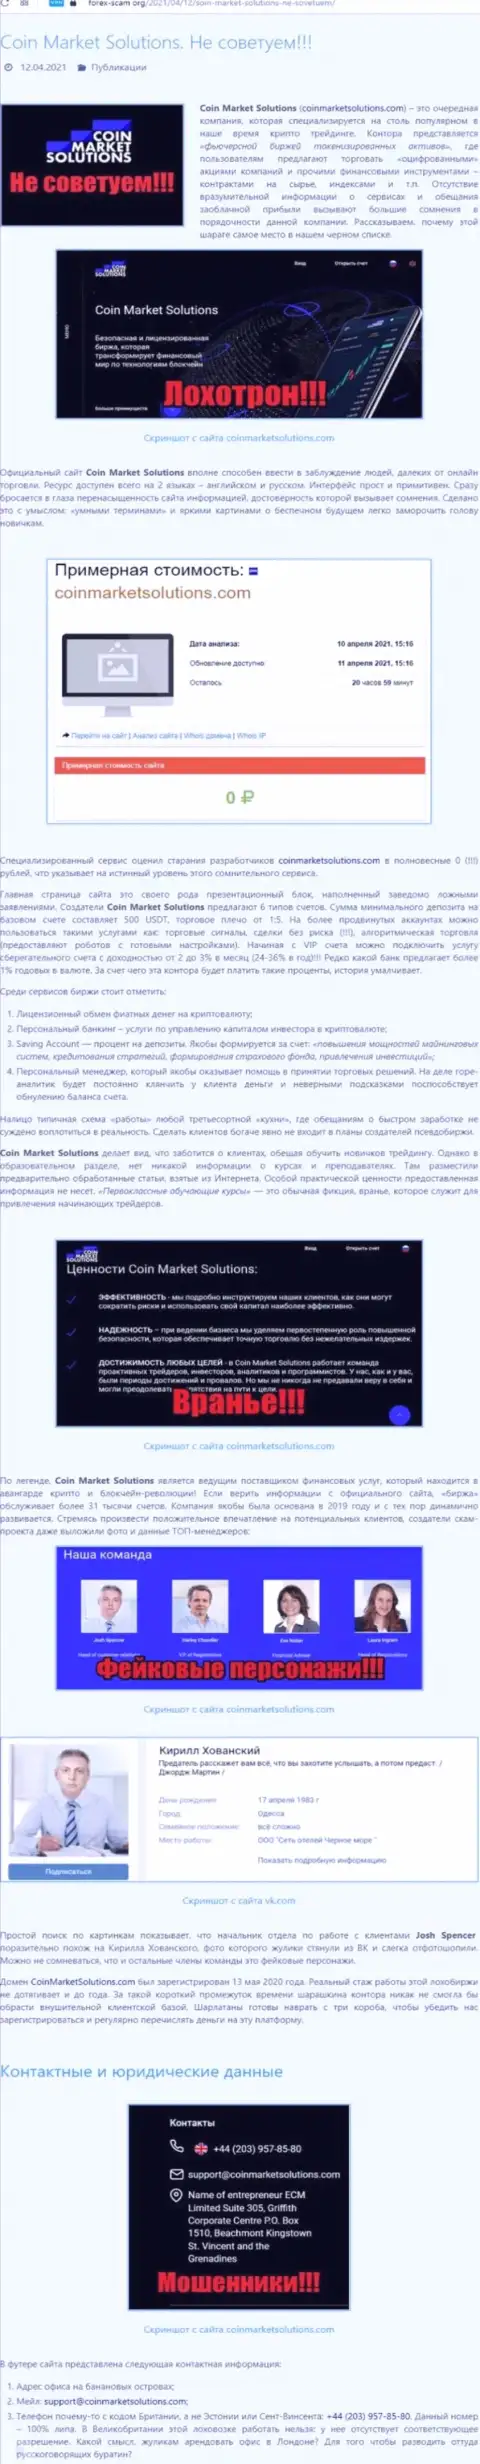 Предложения взаимодействия от организации КоинМаркет Солюшинс или как зарабатывают интернет-мошенники (обзор махинаций организации)